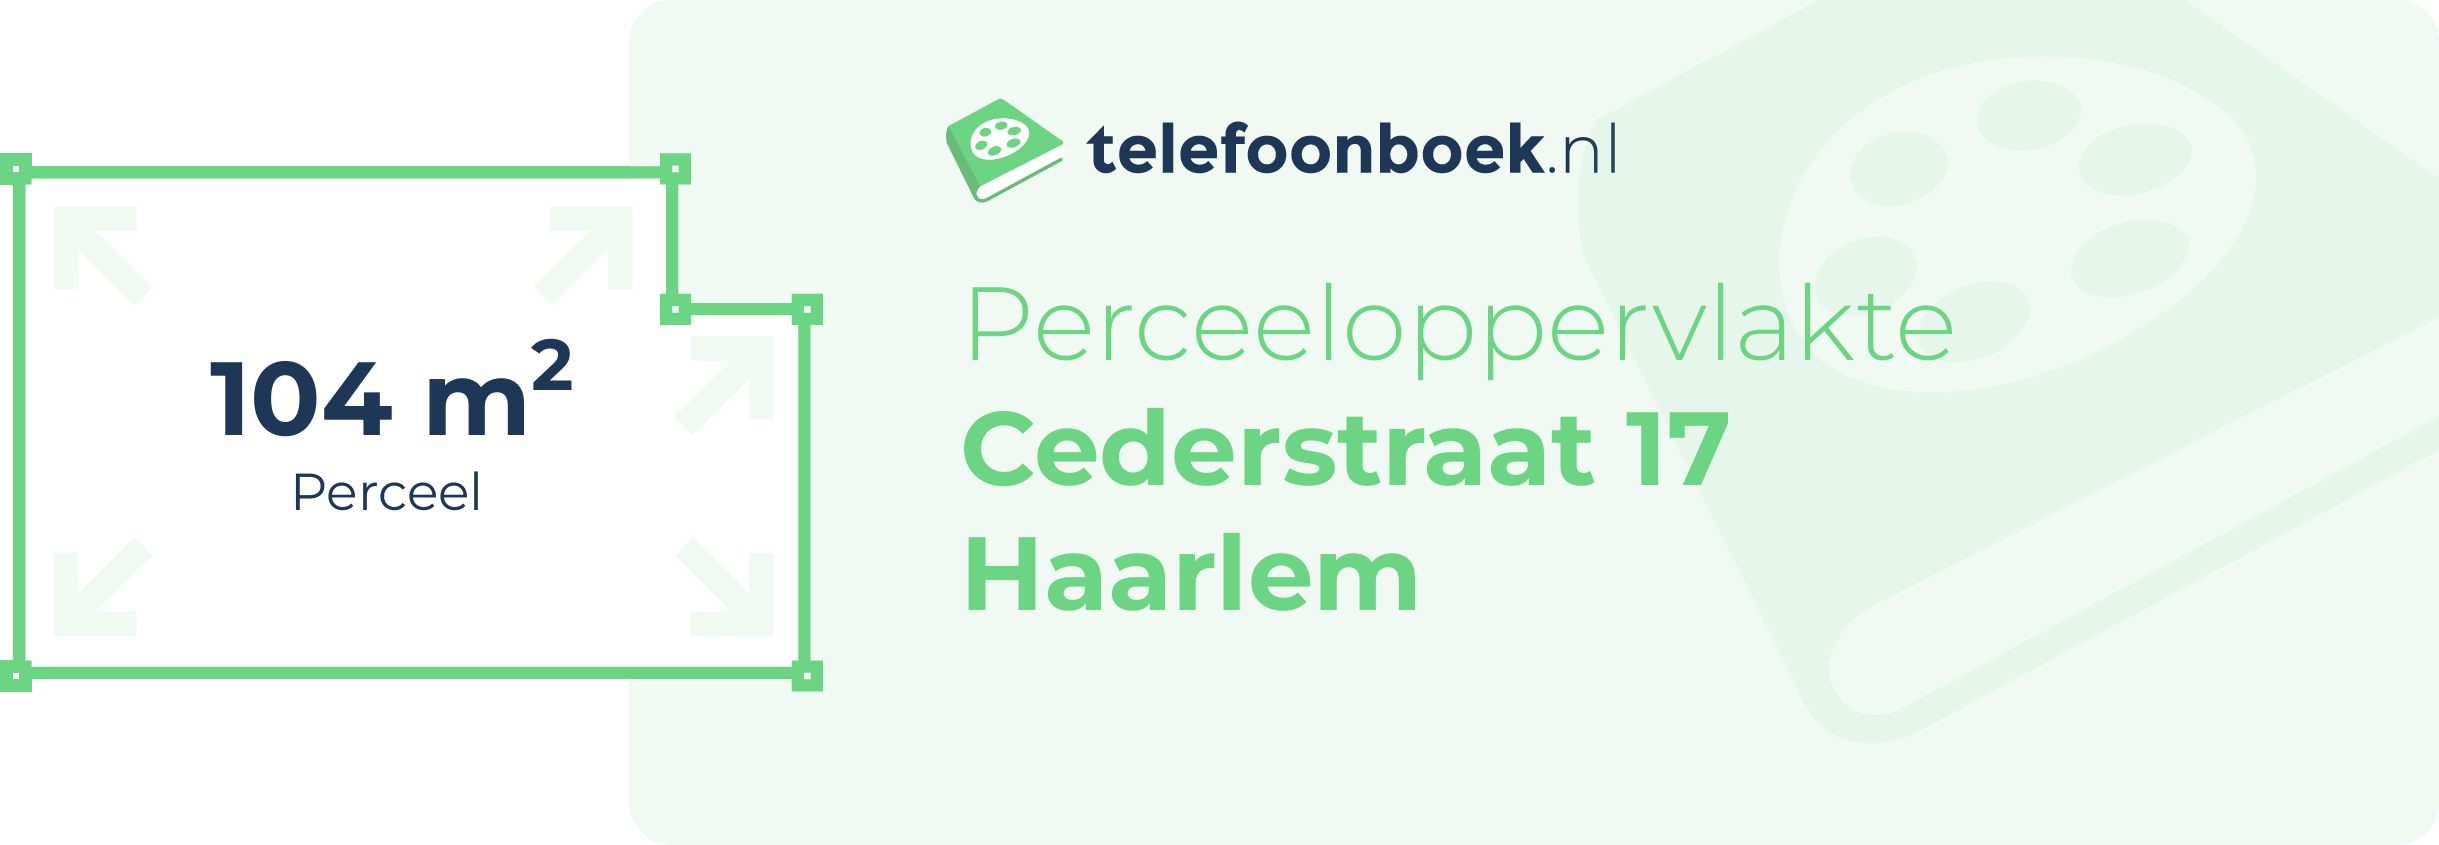 Perceeloppervlakte Cederstraat 17 Haarlem